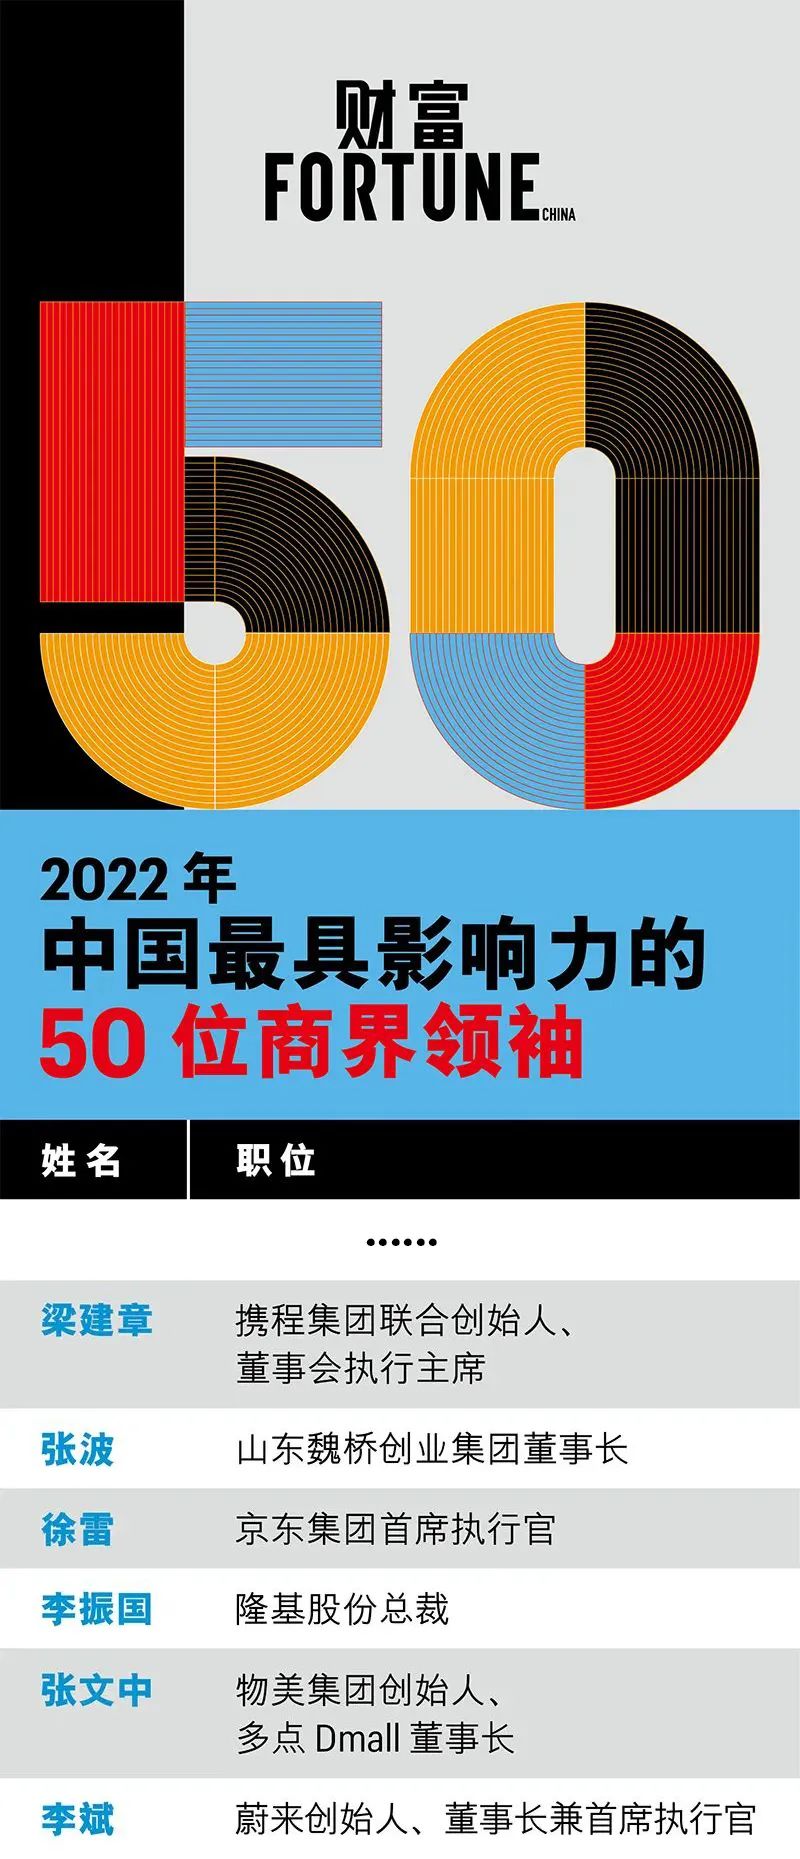 李振国入选“2022年中国最具影响力的50位商界领袖”